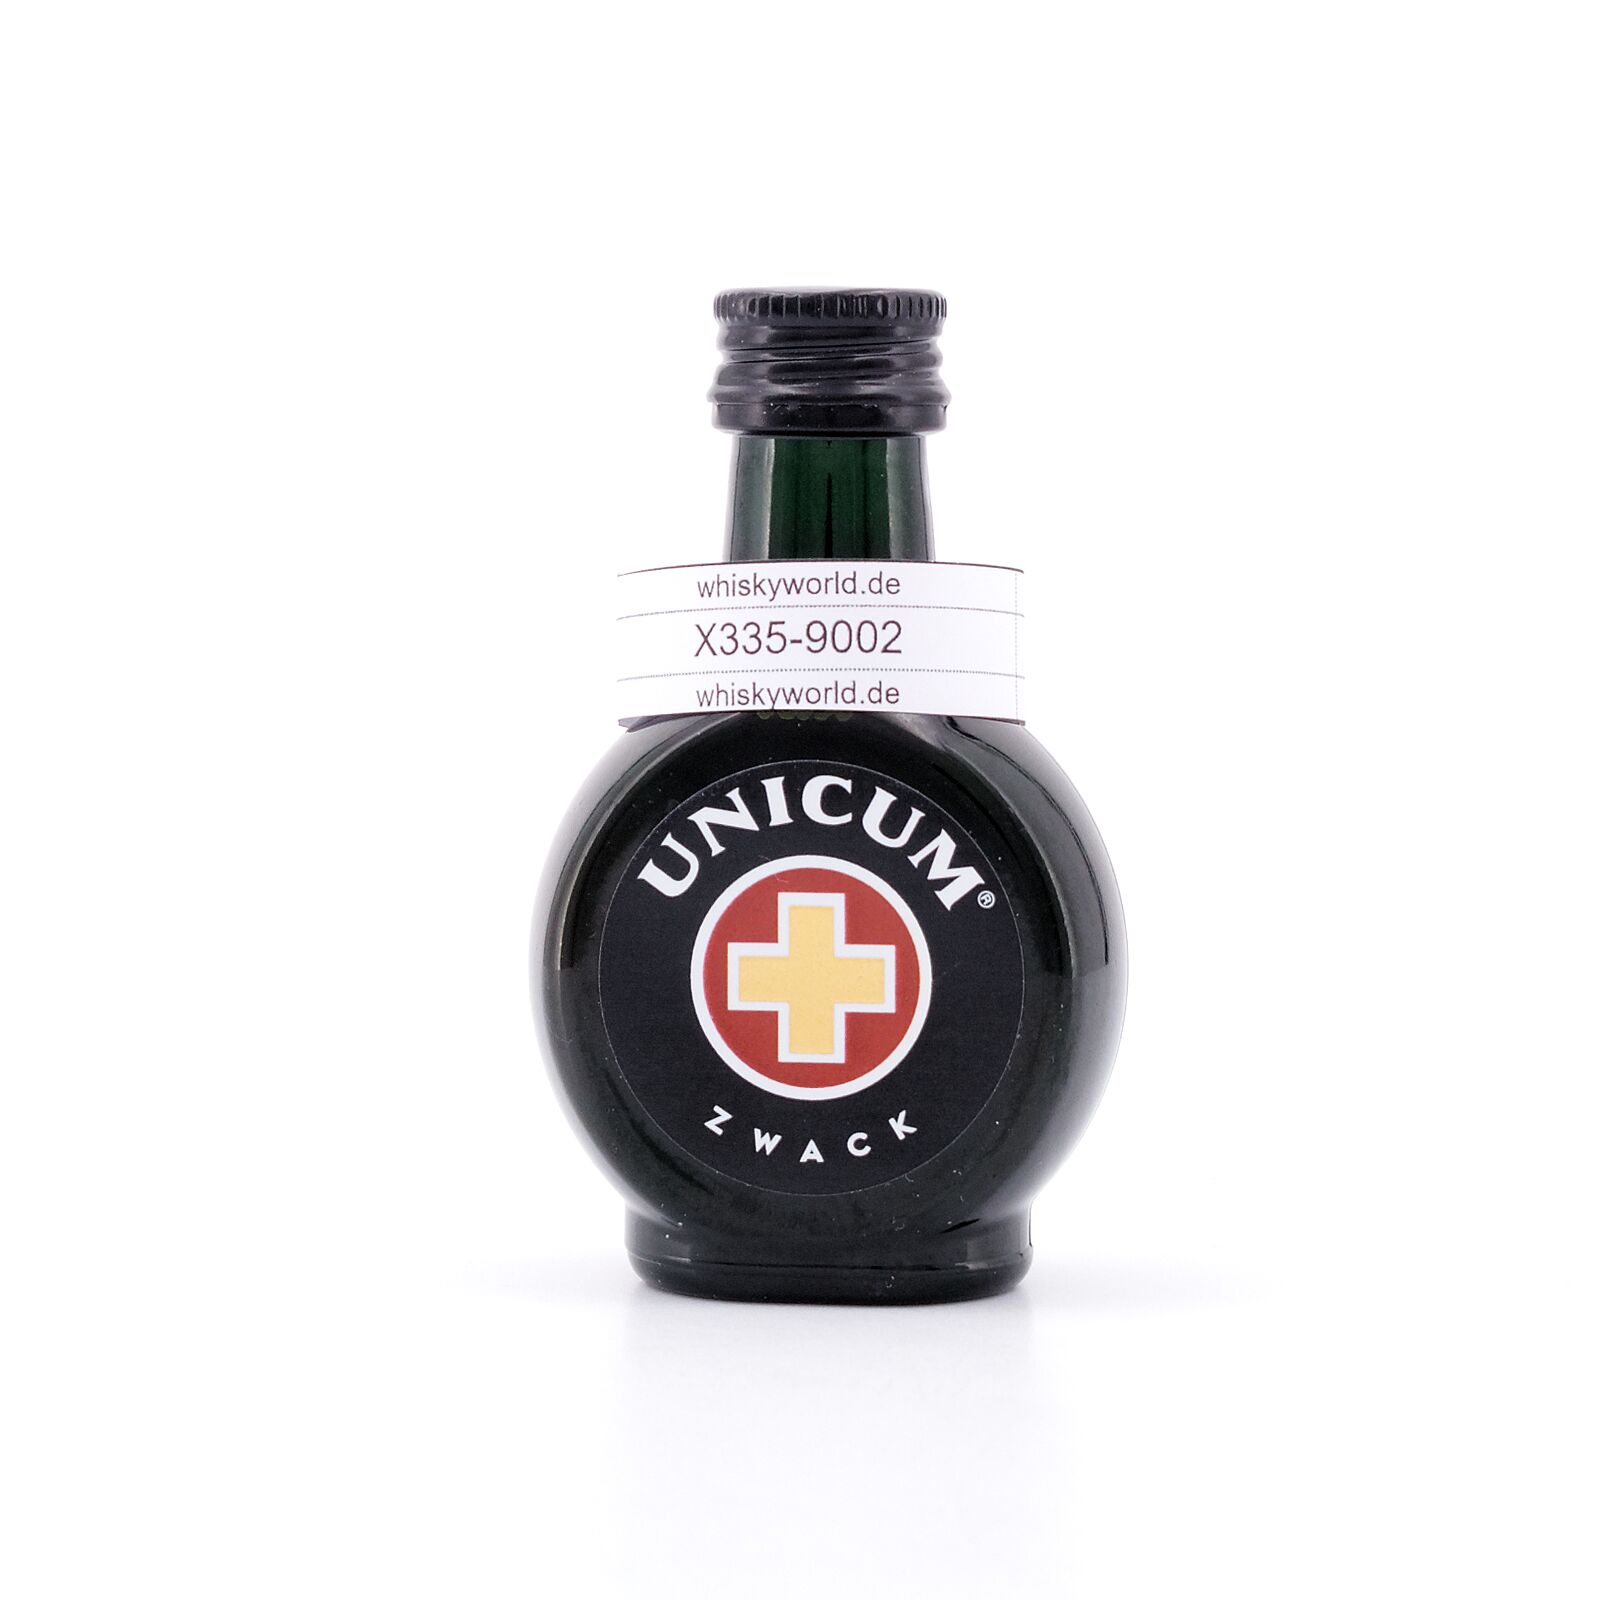 Zwack Miniatur Unicum 40.0% 0,040 Kräuterlikör Liter/ vol